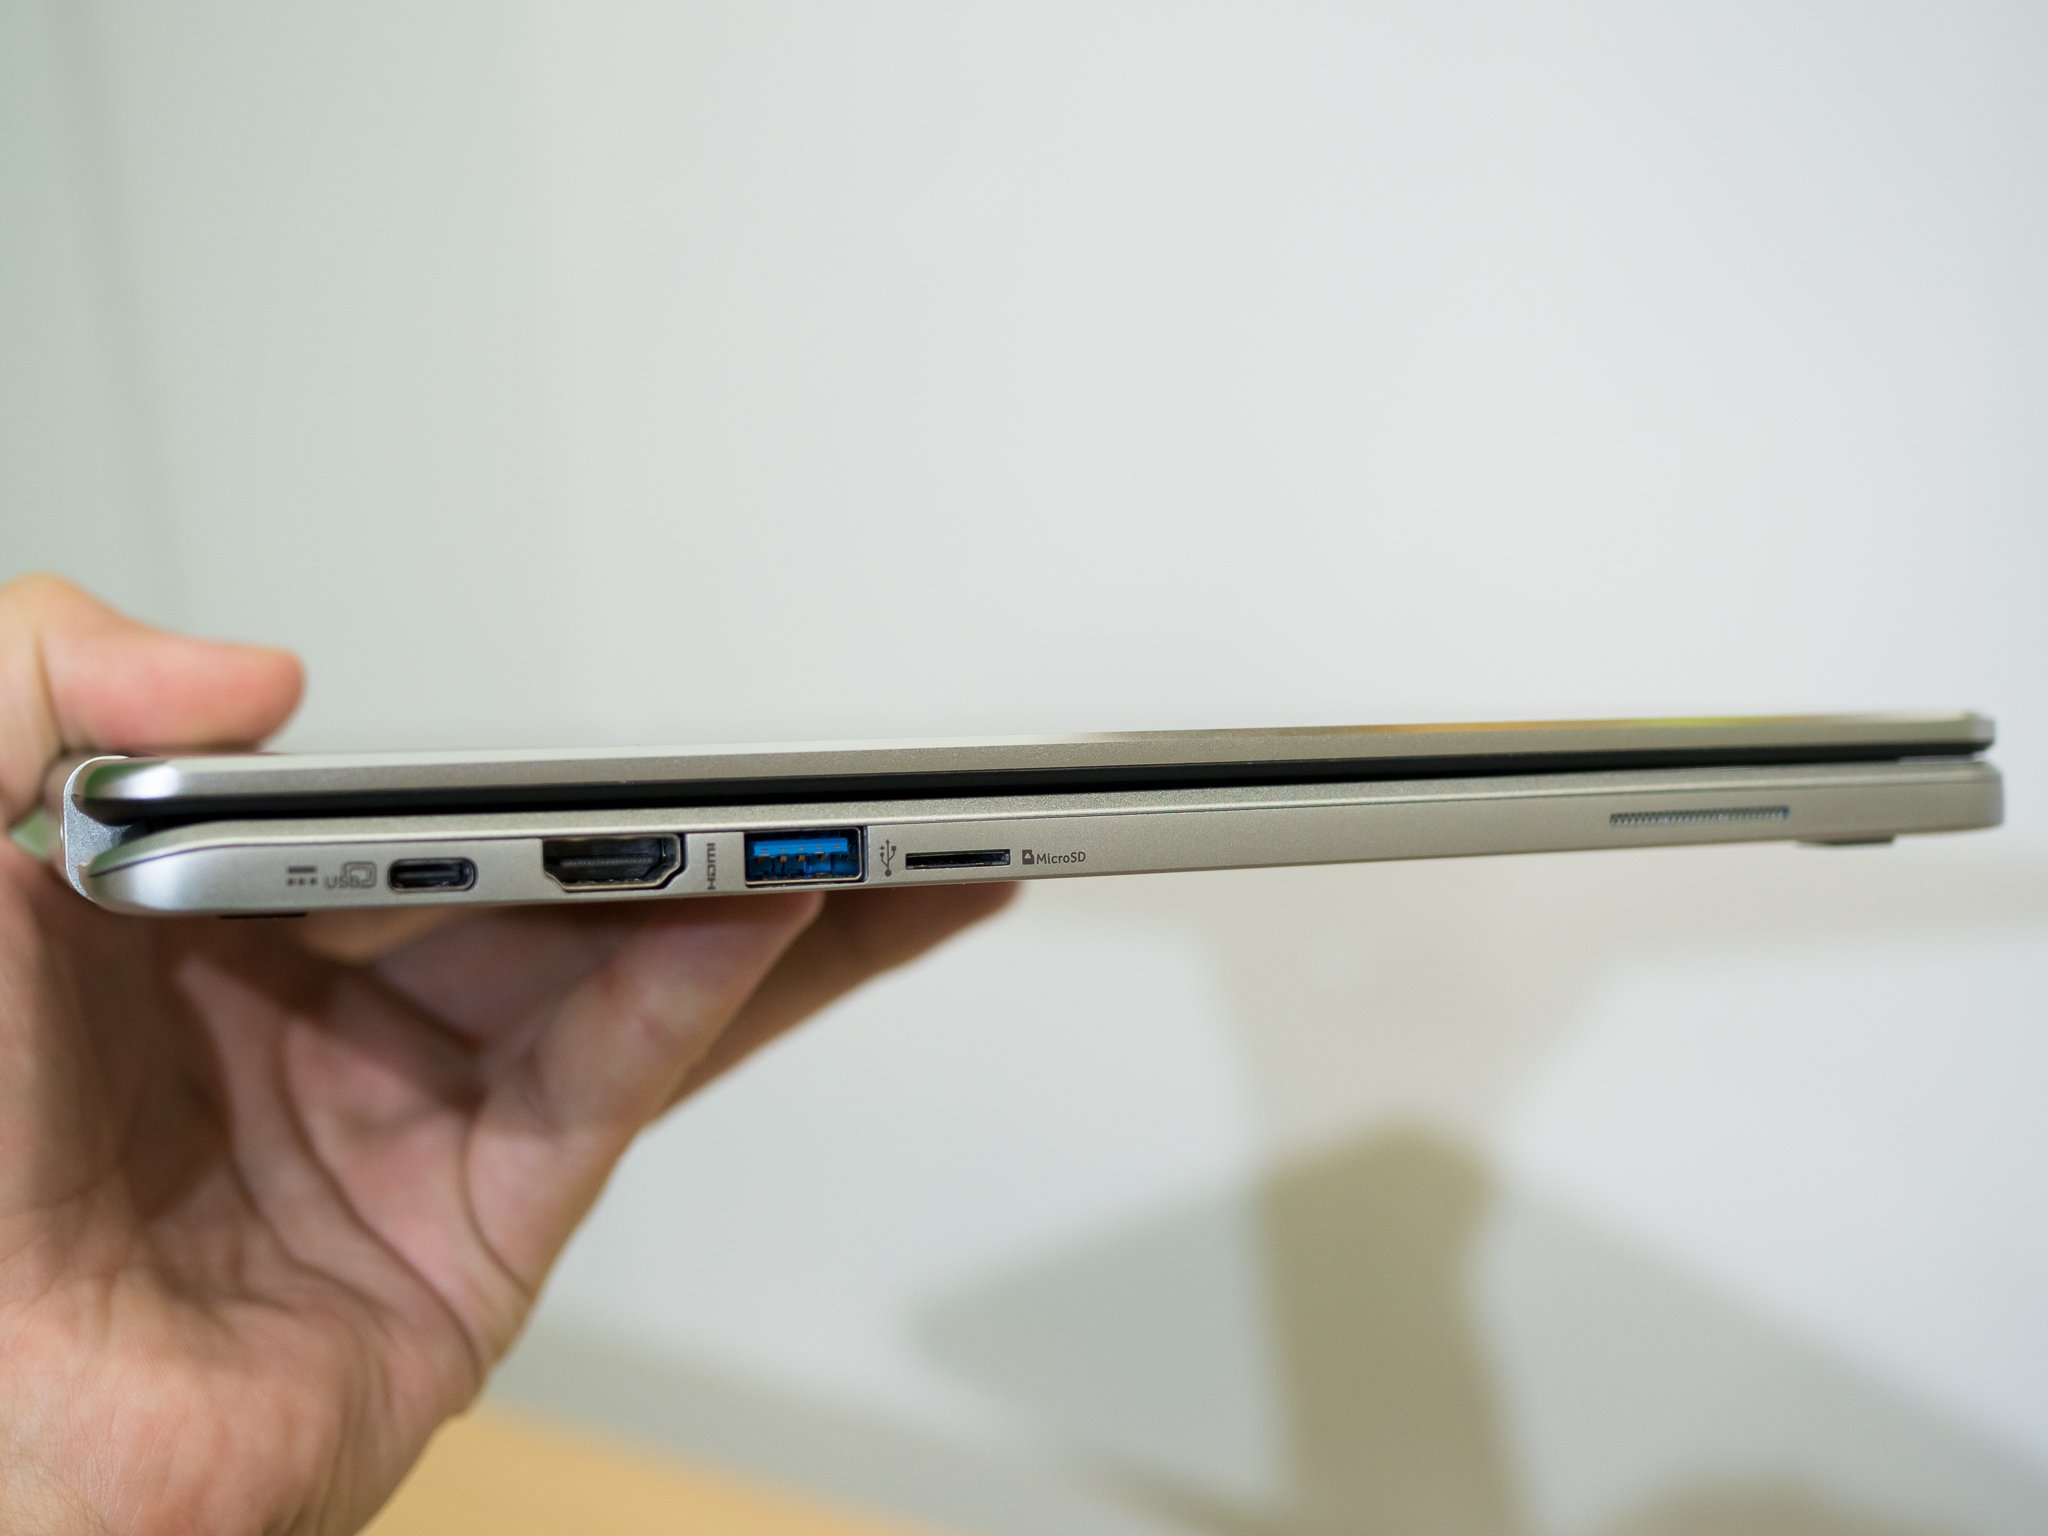 Acer Chromebook R13 Cb5 312t